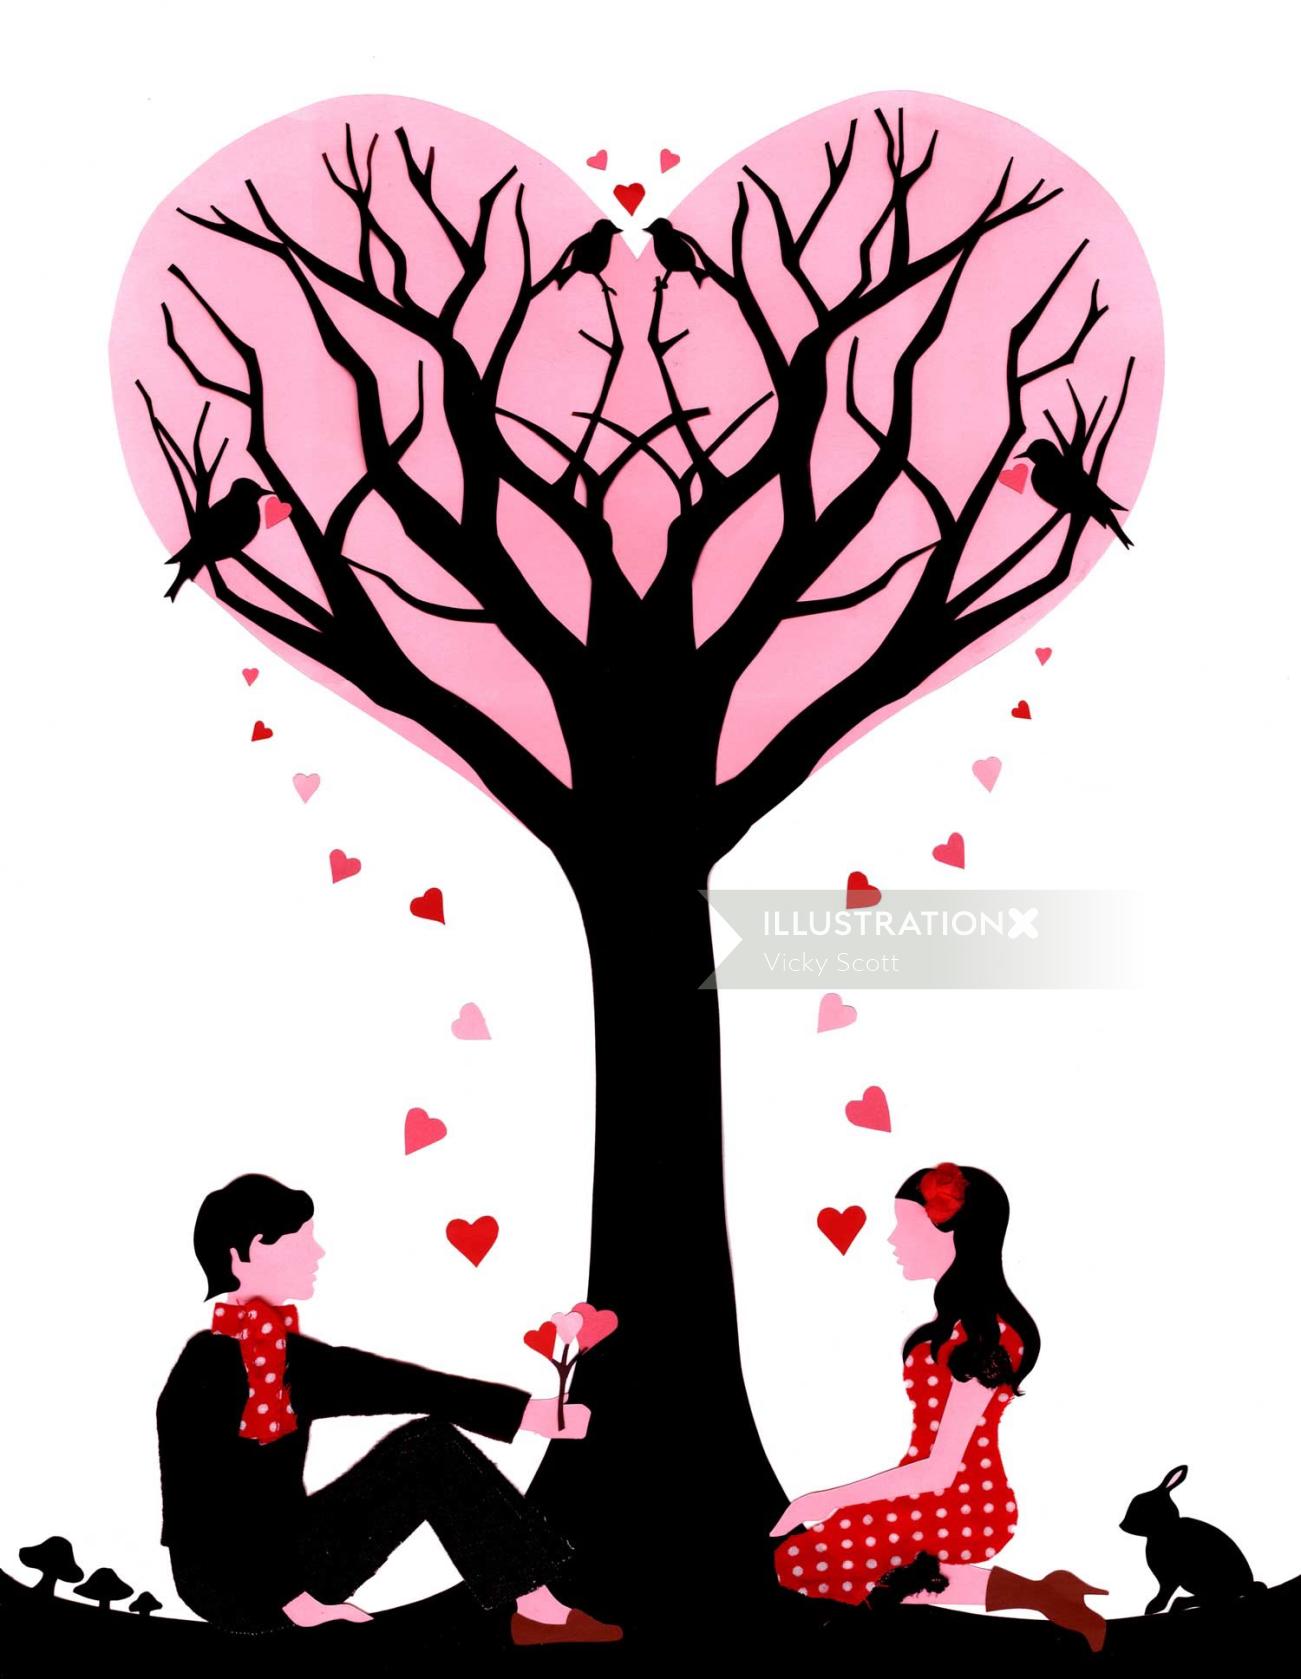 Amantes sob a ilustração da árvore por Vicky Scott